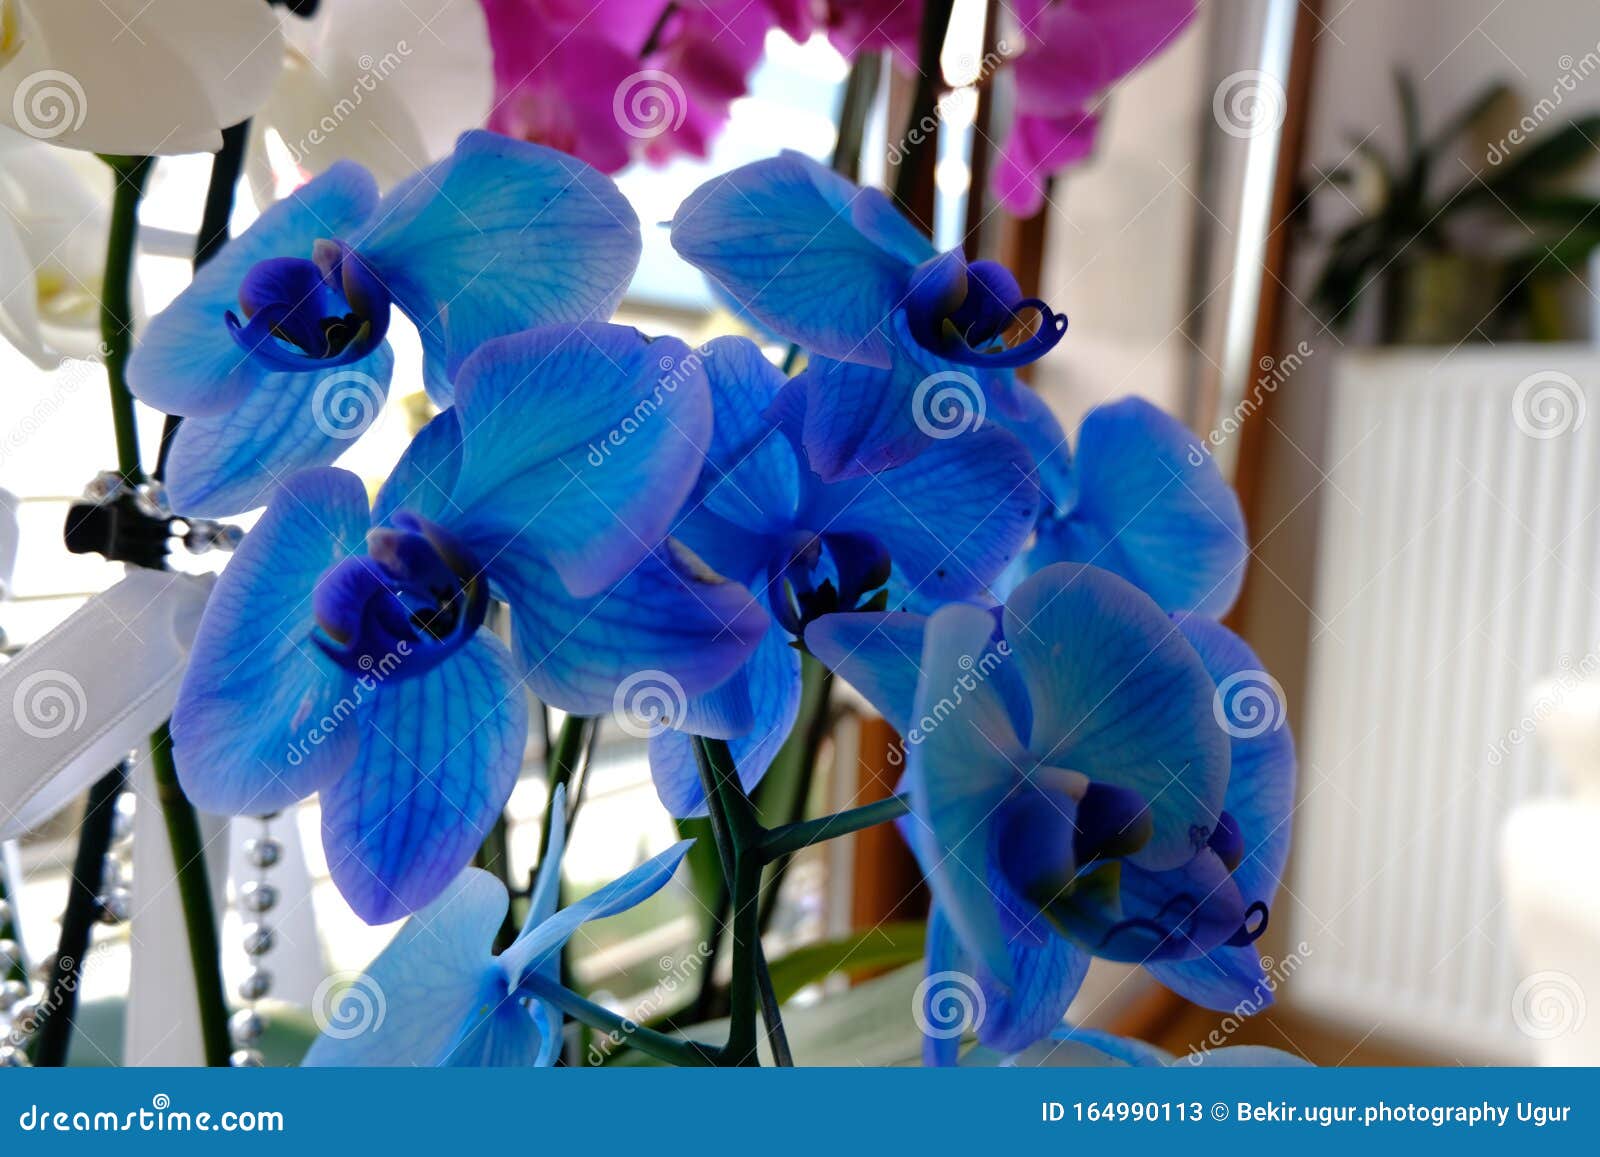 Orquídeas Azules Y Blancas Y Otras Plantas De La Tienda Del Jardín Varias  Orquídeas a La Venta En La Tienda Imagen de archivo - Imagen de flores,  agricultura: 164990113